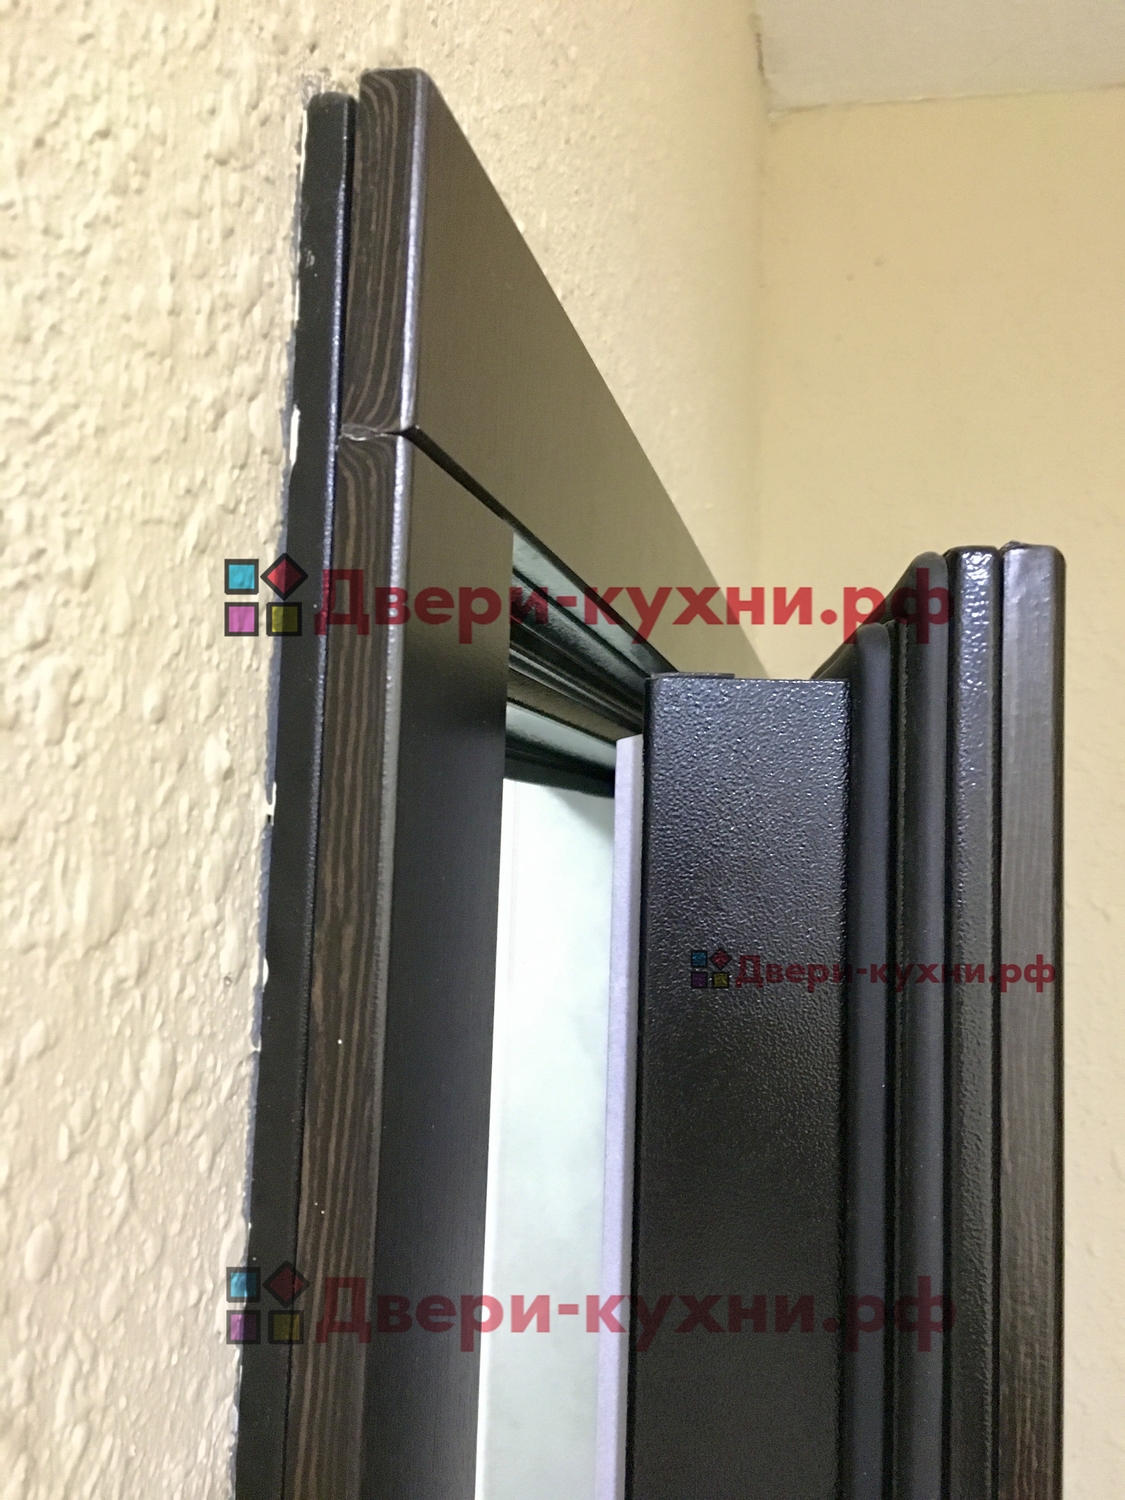 Входная дверь металлическая в квартиру со звукоизоляцией